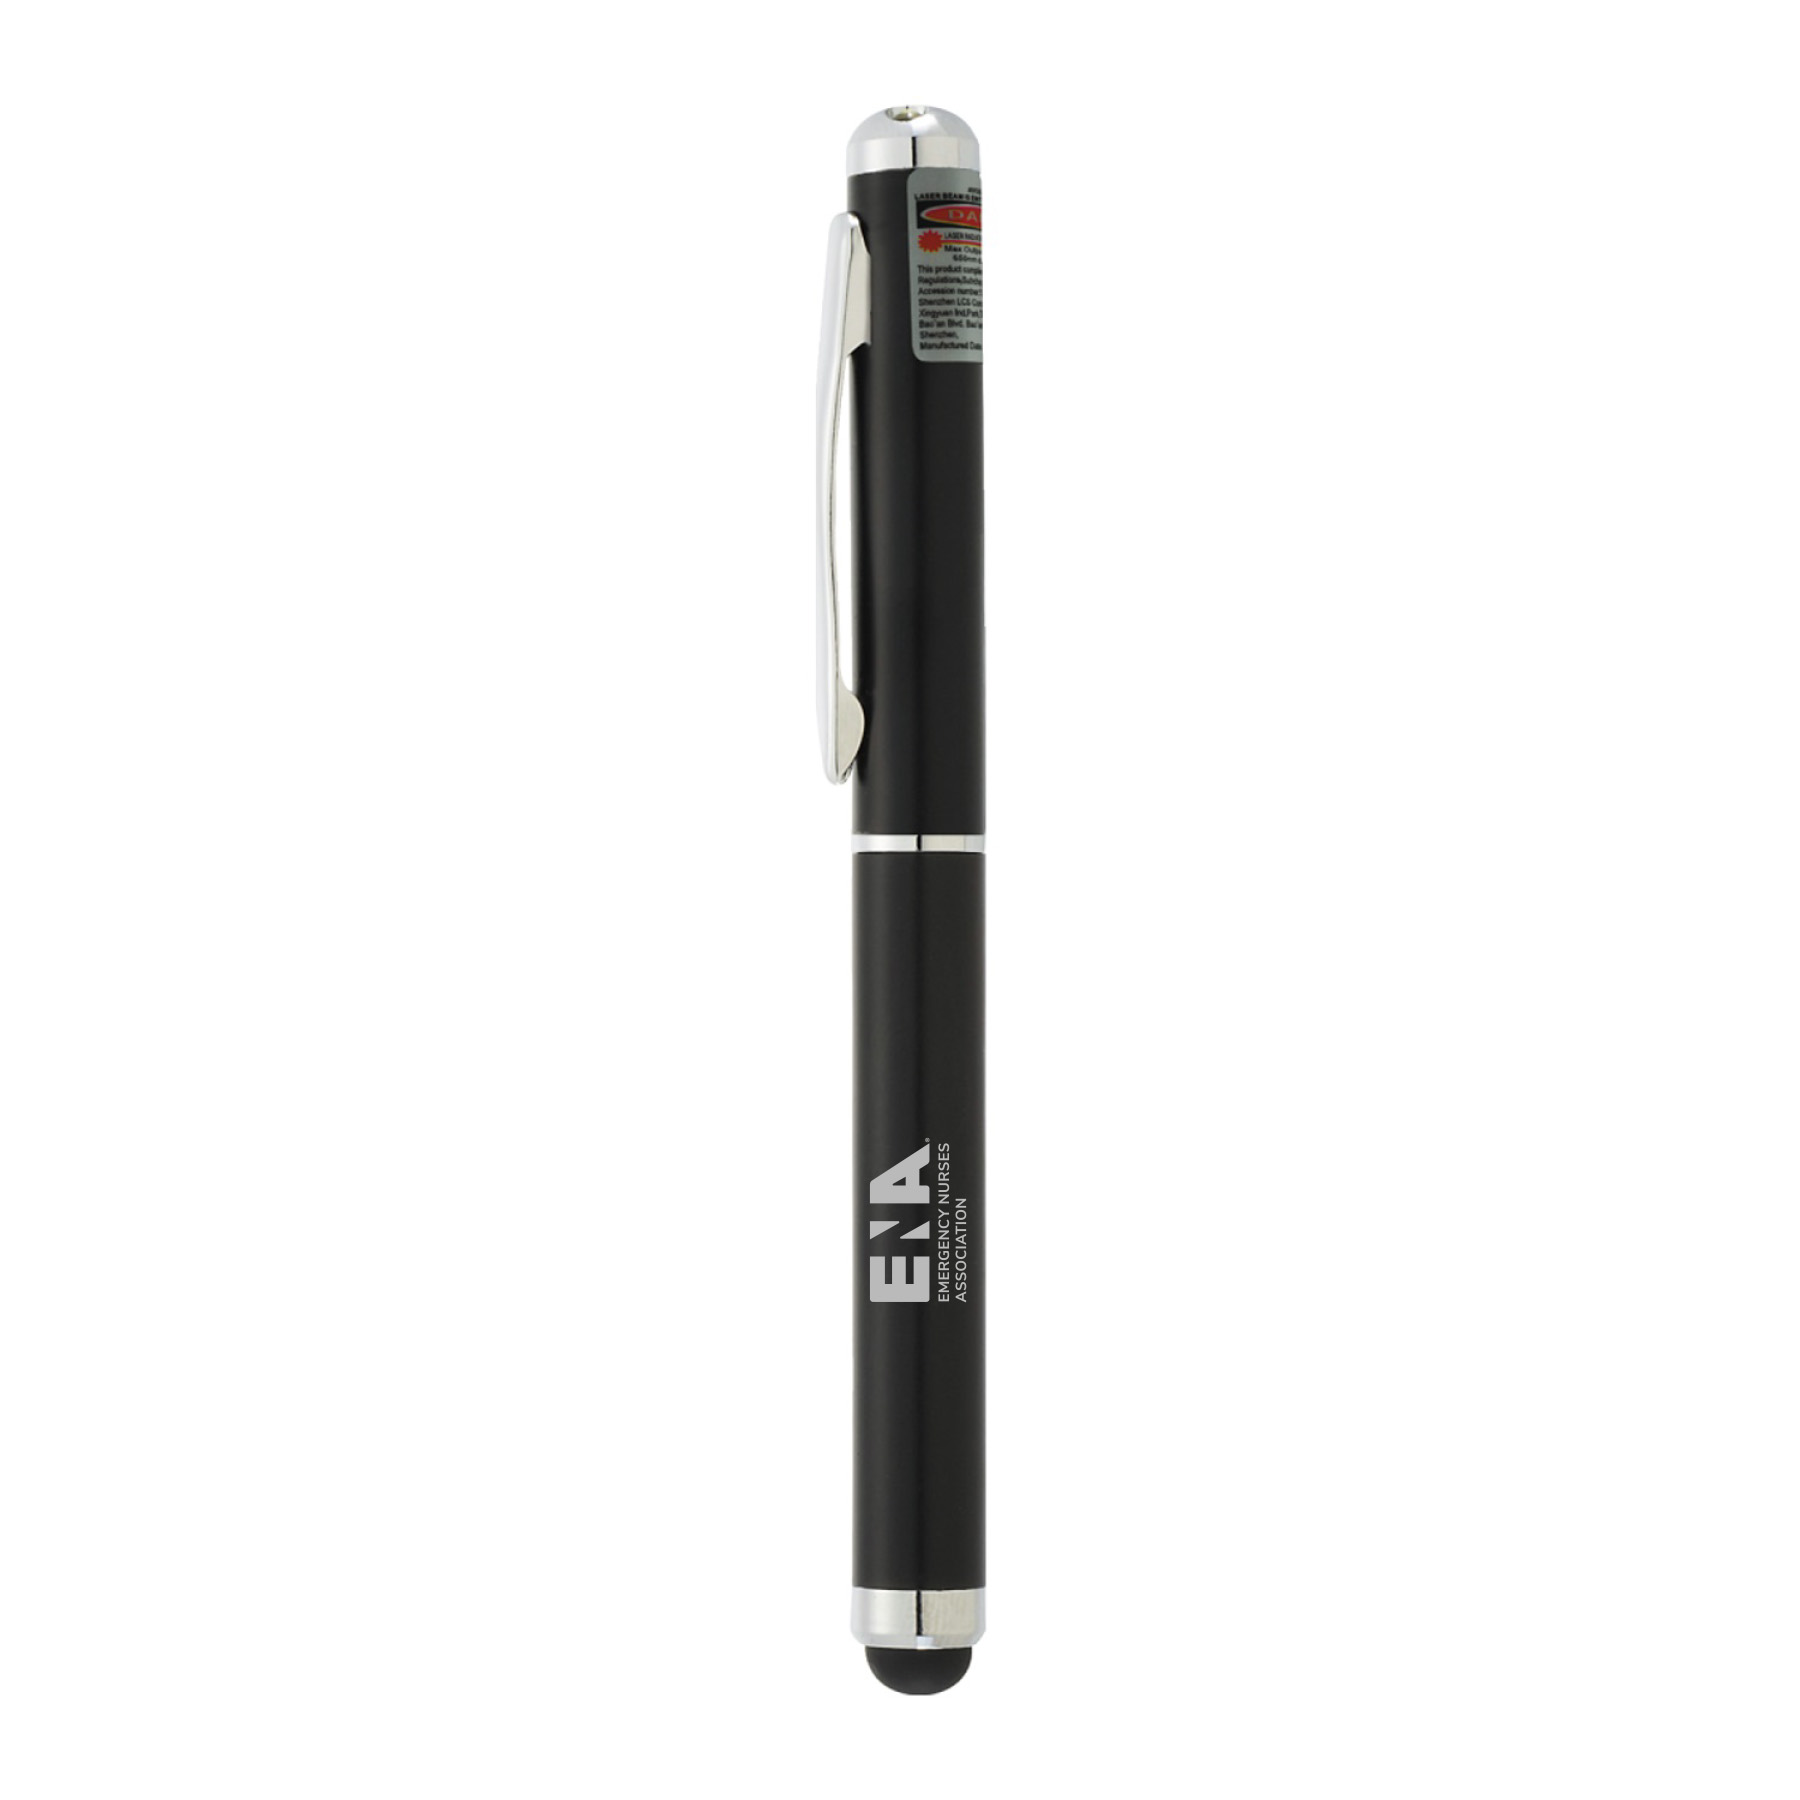 ENA Black 4 in 1 Light and Laser Pen